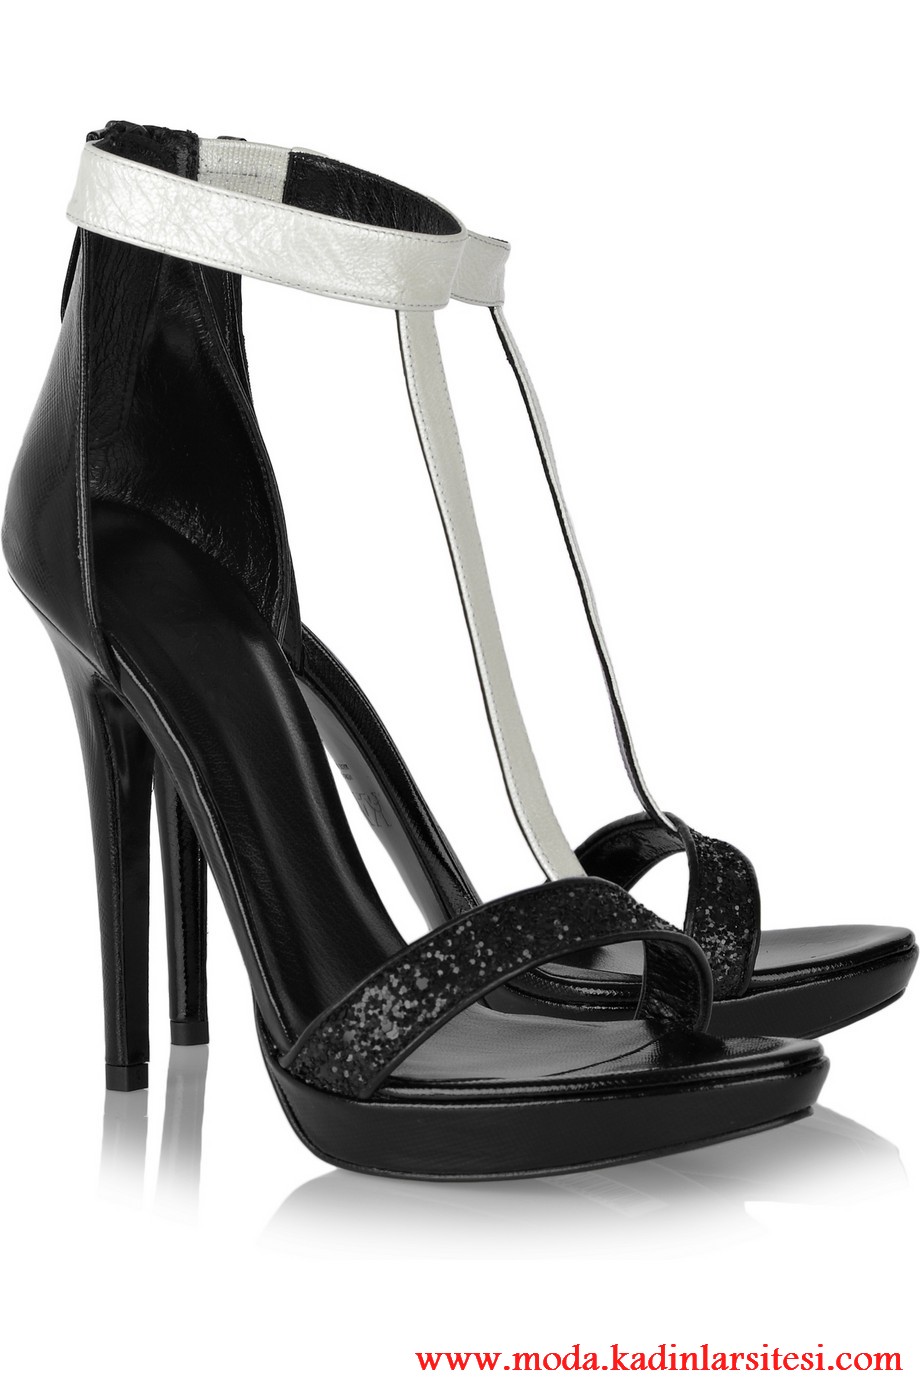 karl siyah ayakkabı modeli